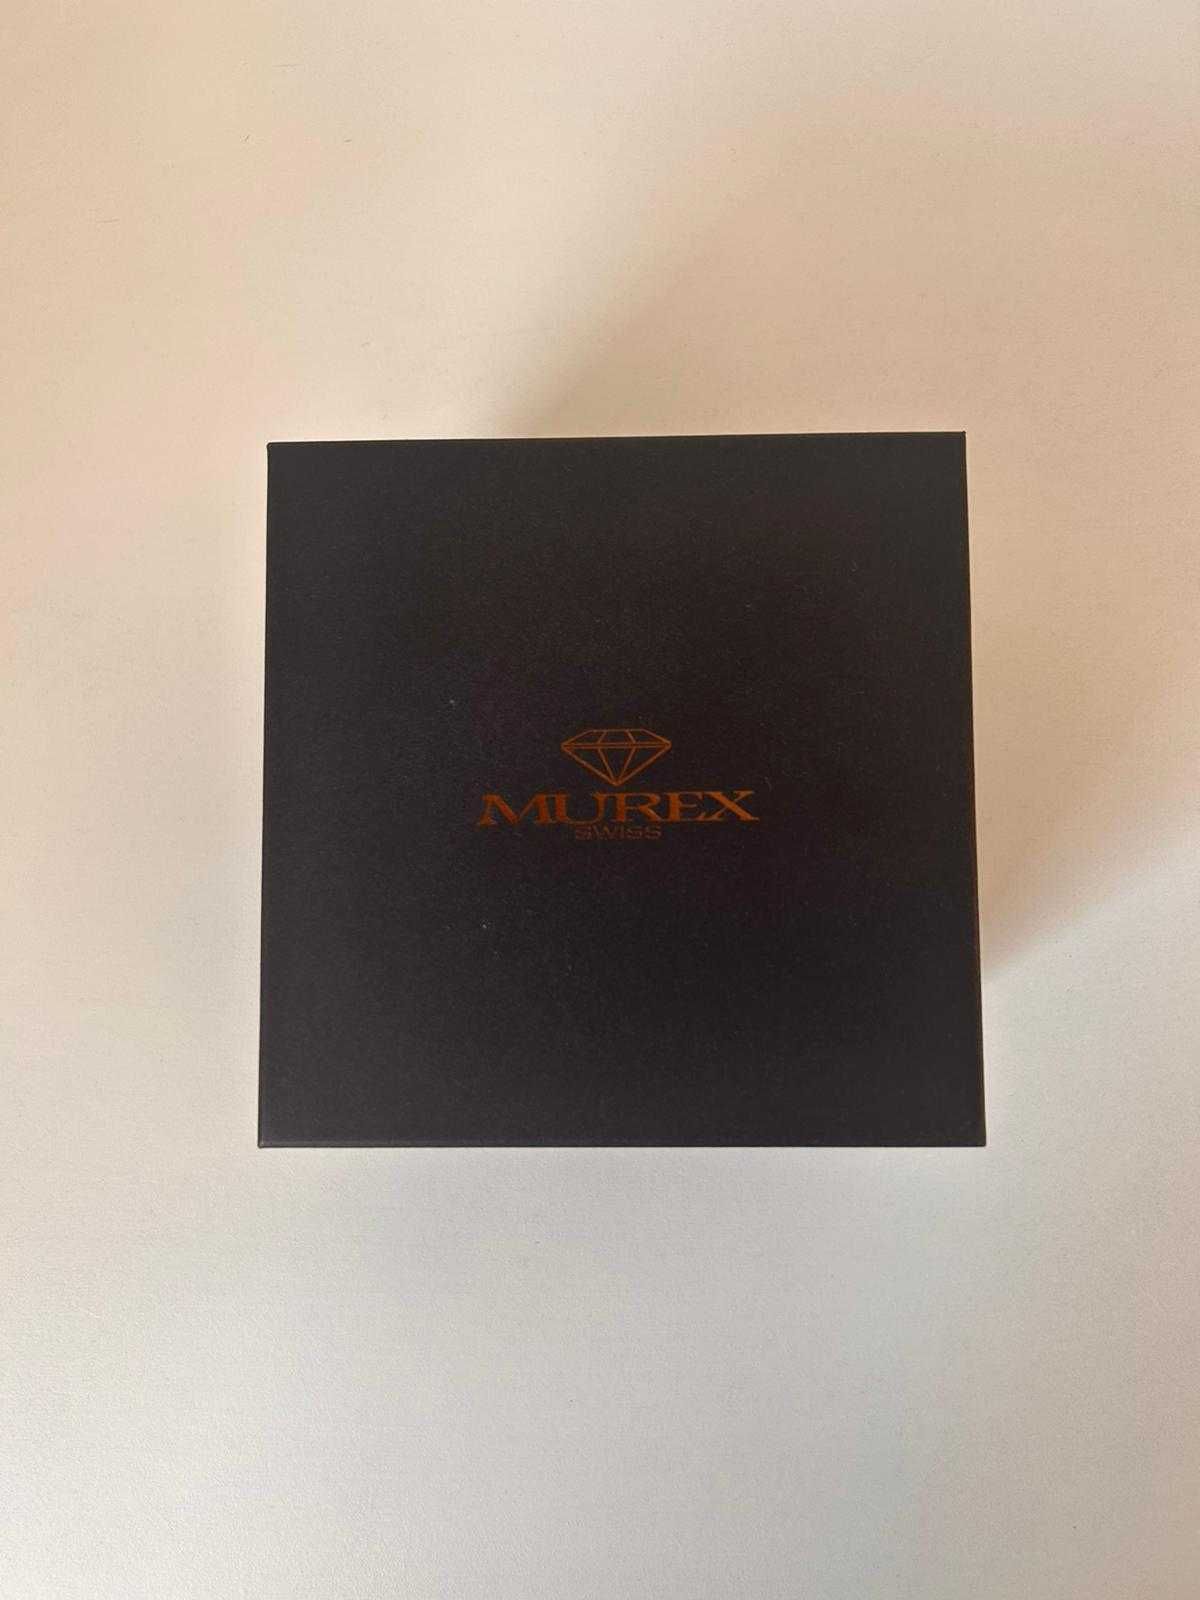 Relógio Murex MUC590-SR-9 NOVO com caixa e certificado